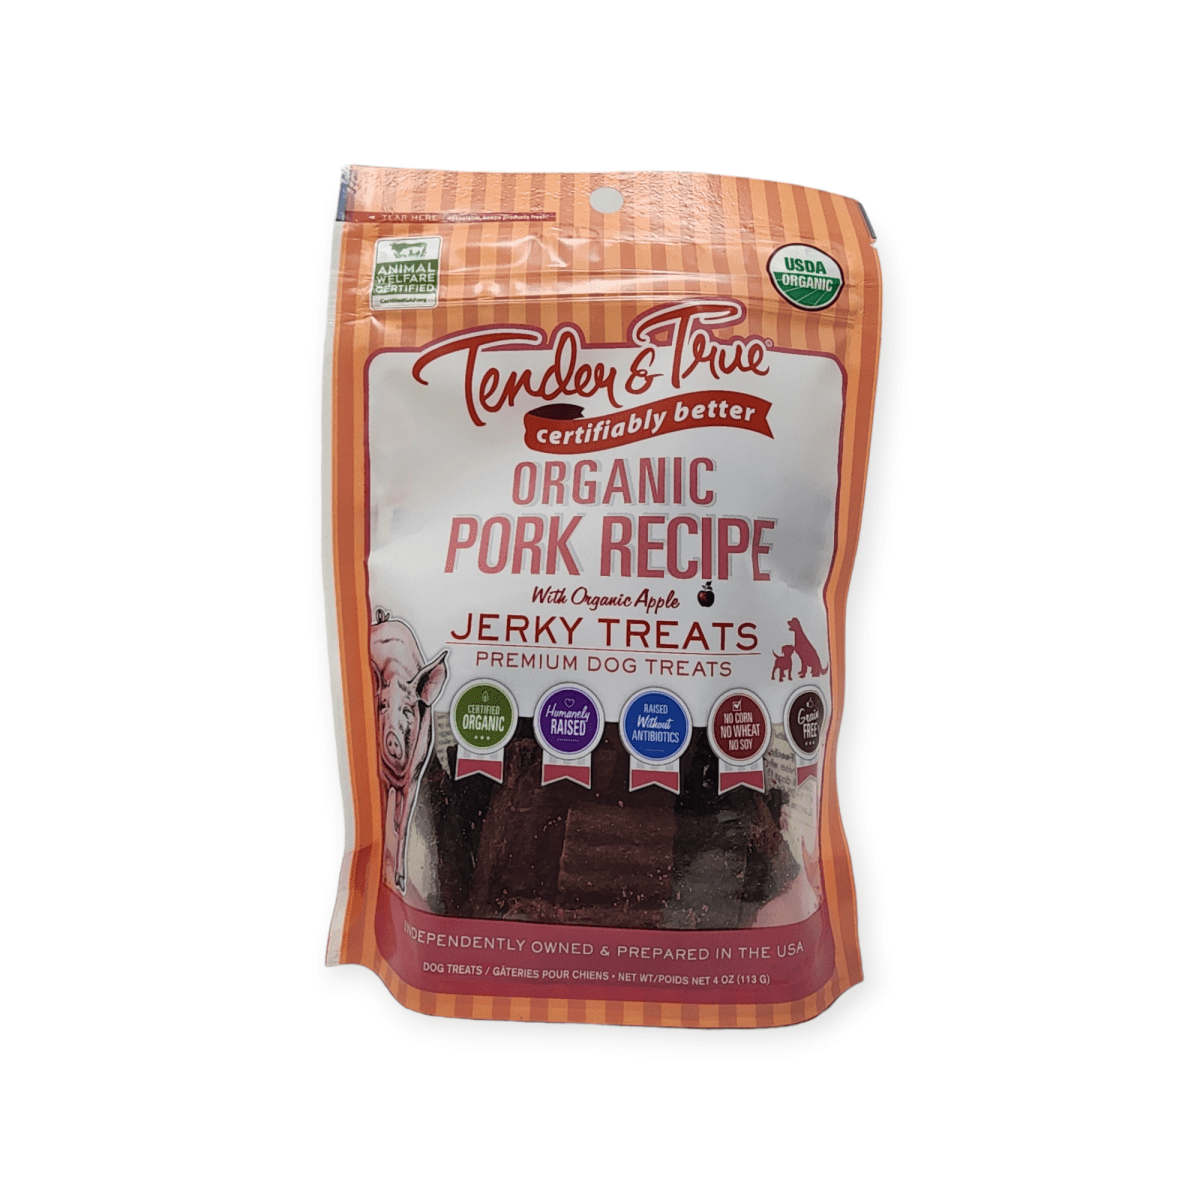 Tender & True Organic Pork Recipe Jerky Dog Treats (113g)